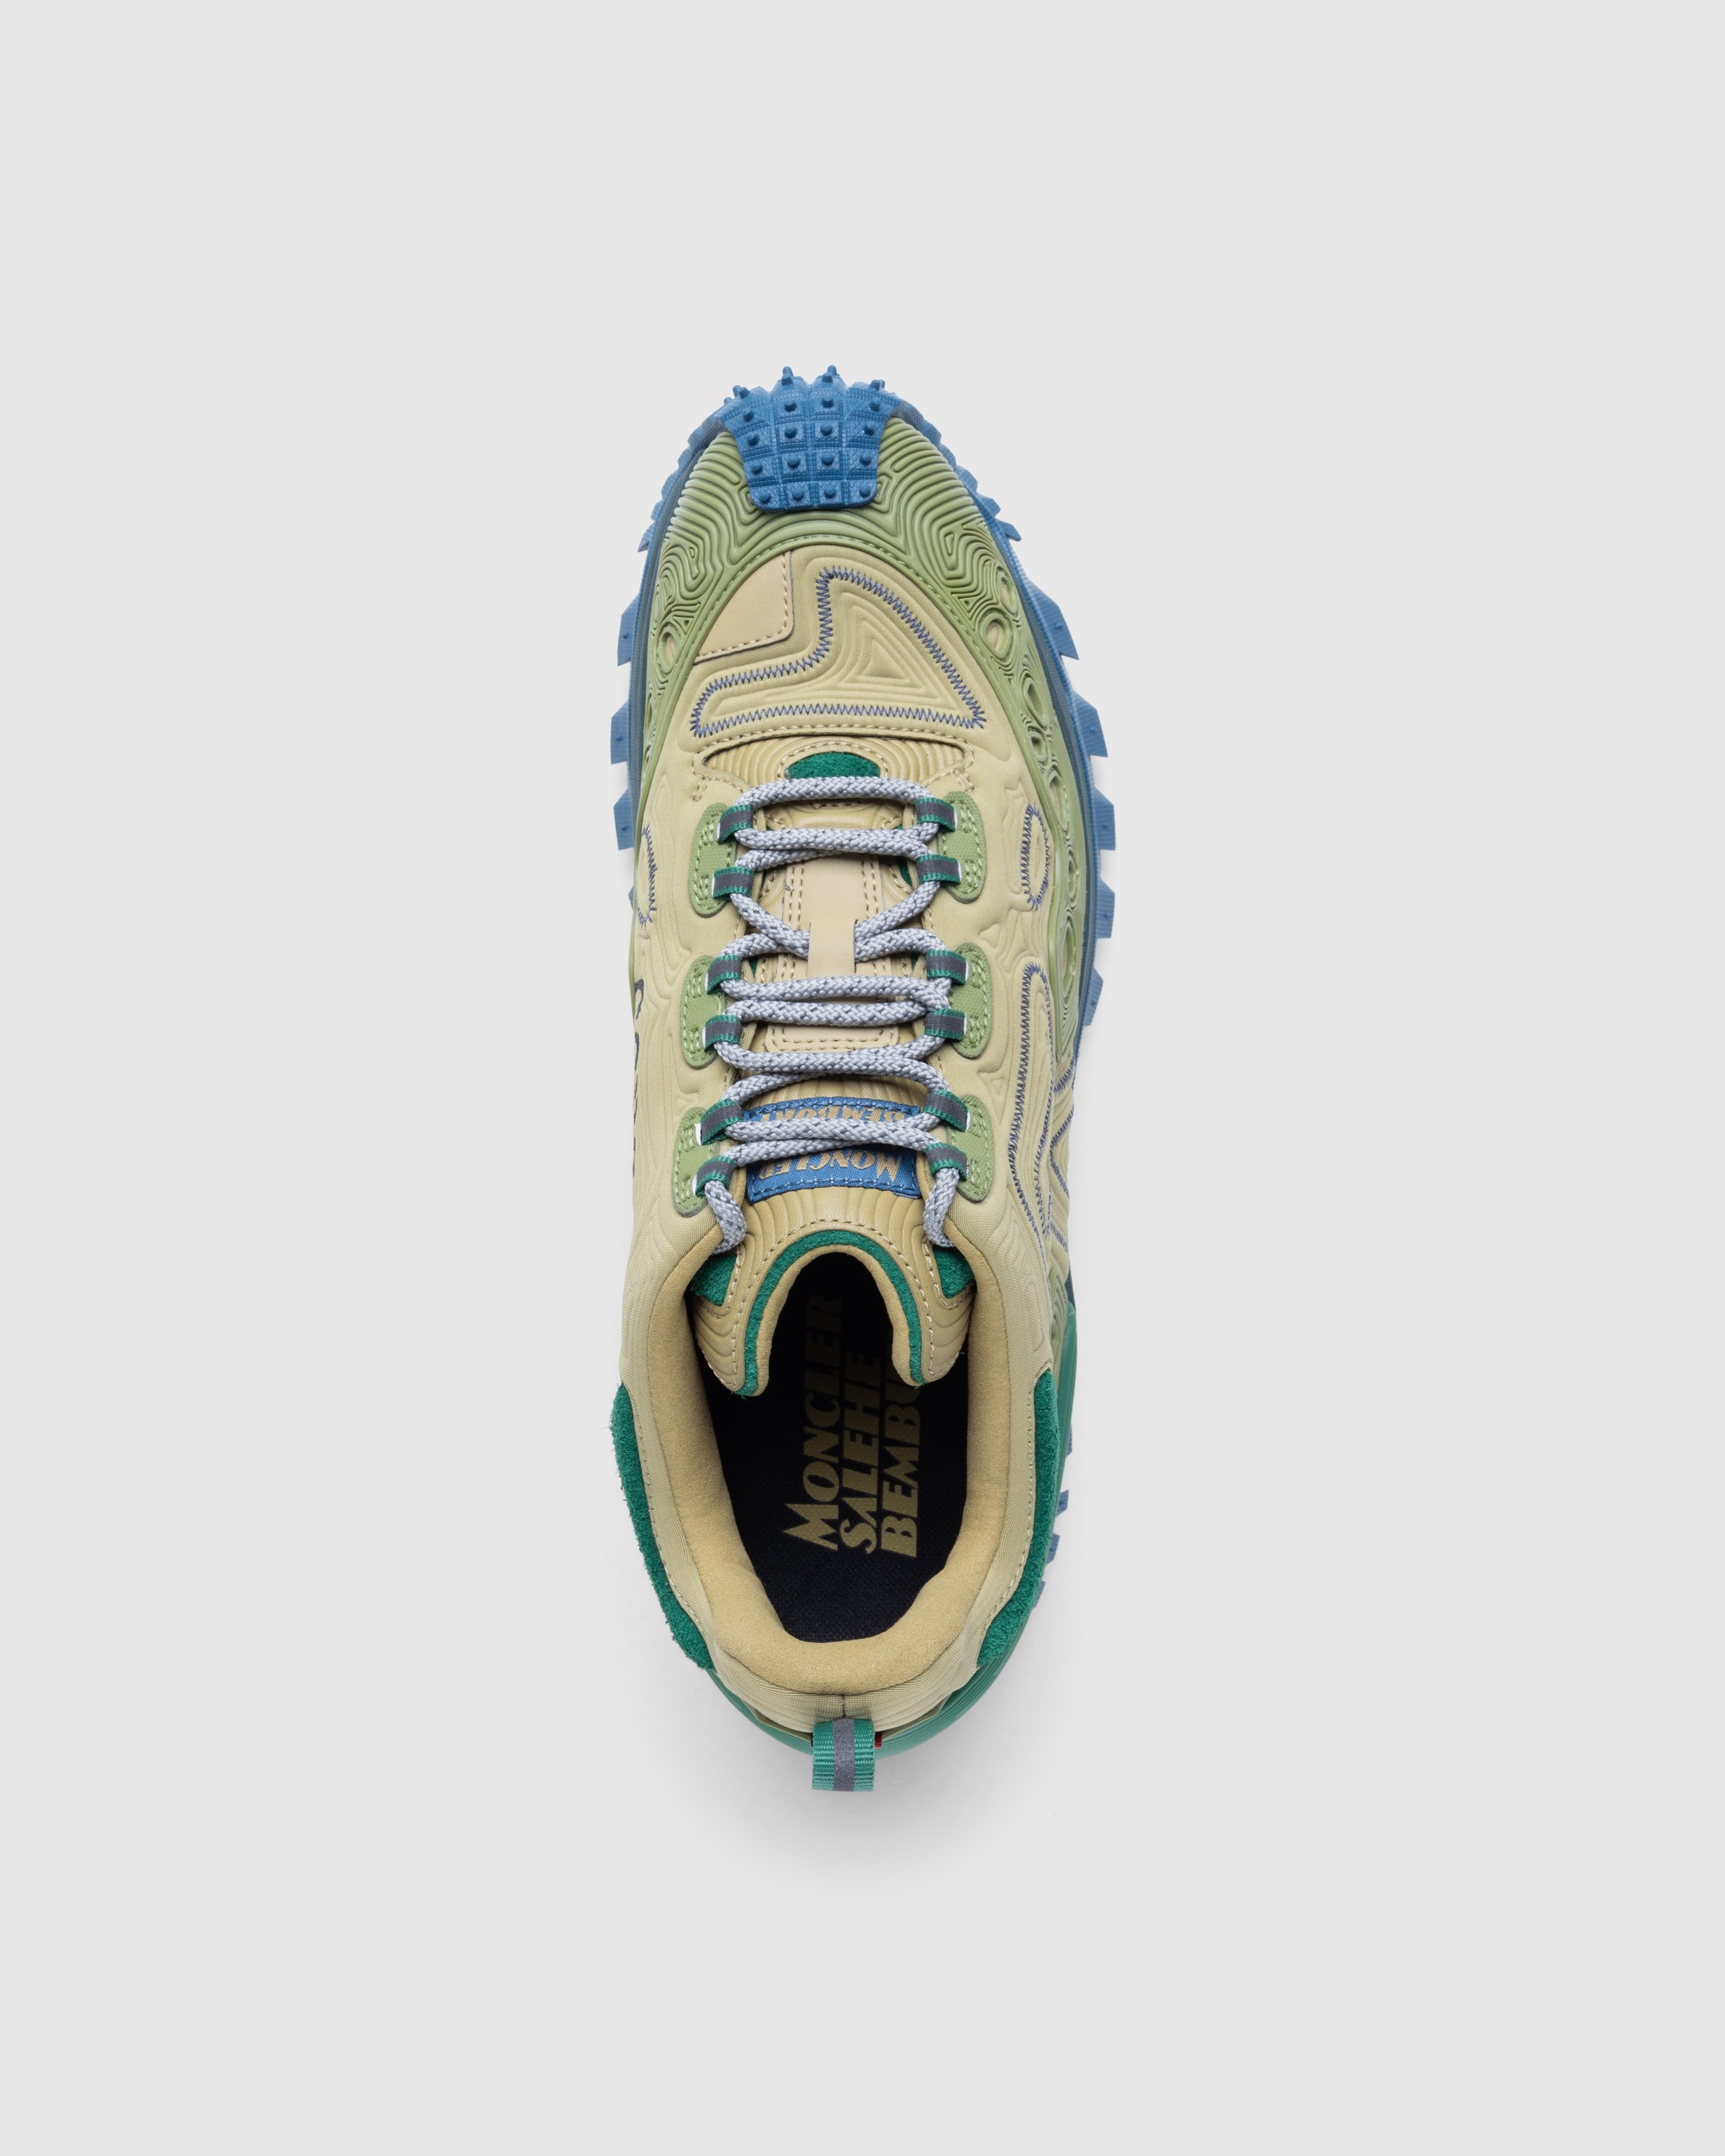 Moncler x Salehe Bembury – Trailgrip Grain Sneakers Beige - Low Top Sneakers - Beige - Image 5